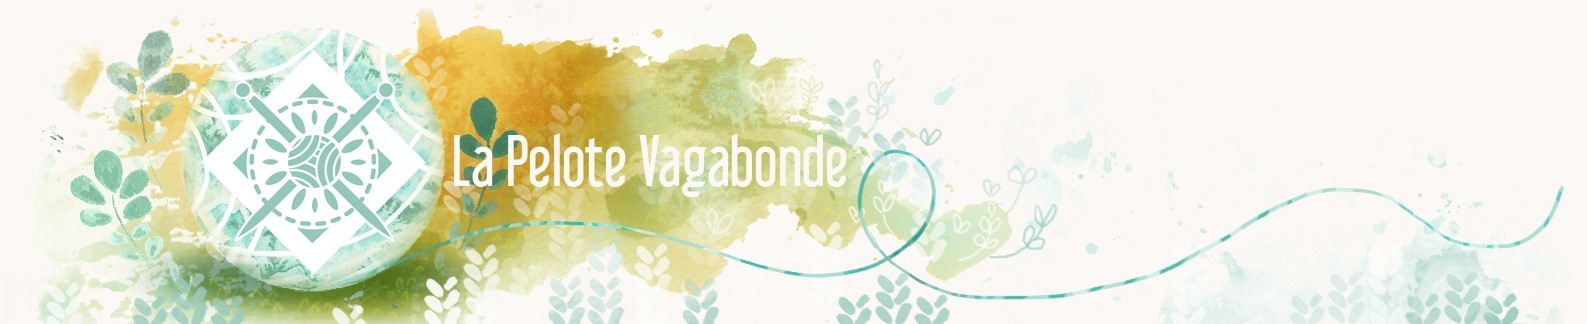 La Pelote Vagabonde logo